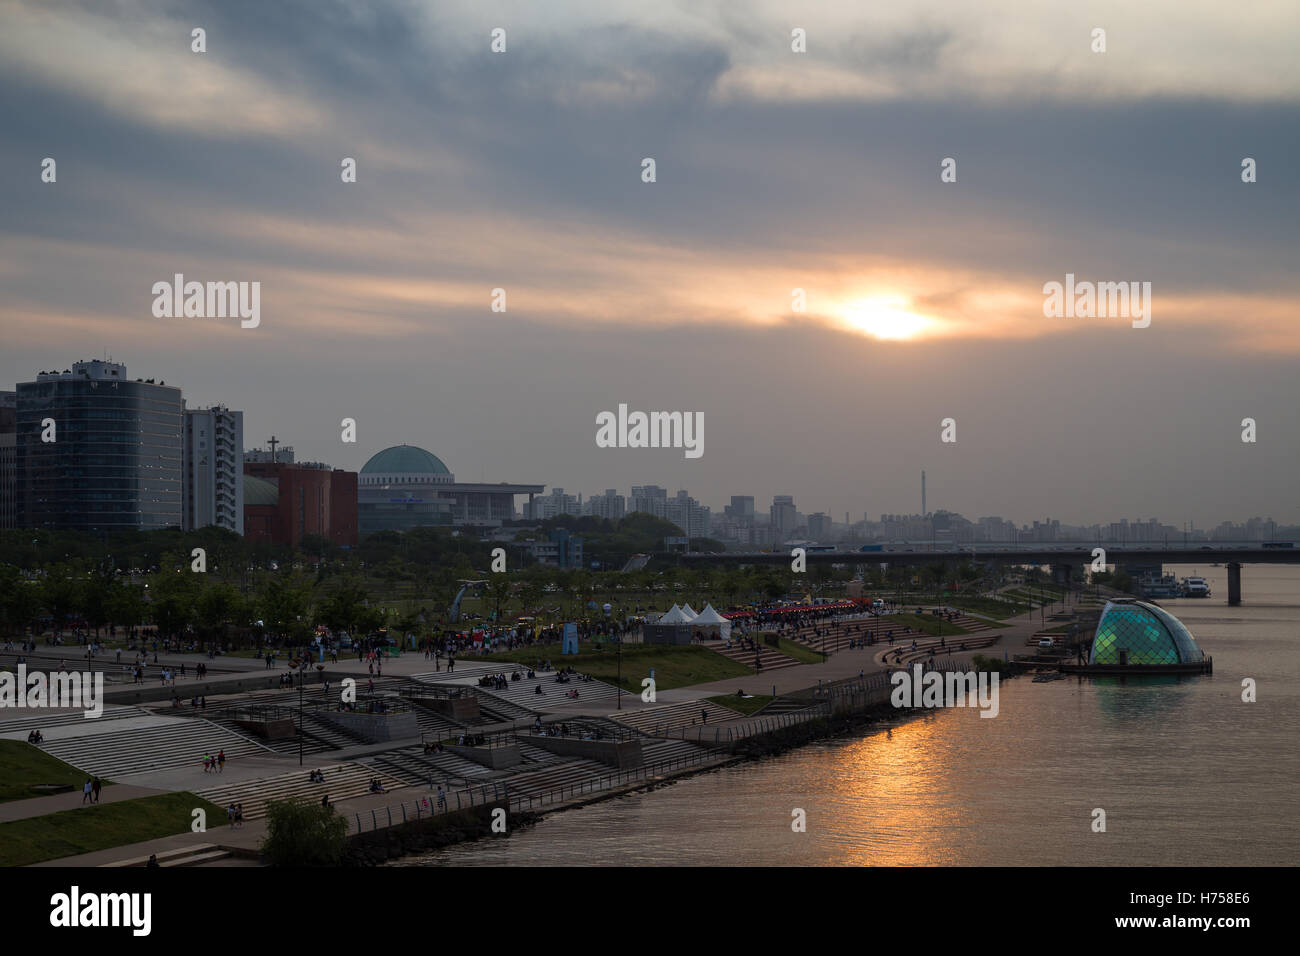 Vue sur un parc dans le fleuve le long de la rivière Han à Séoul, Corée du Sud, au coucher du soleil. Copier l'espace. Banque D'Images